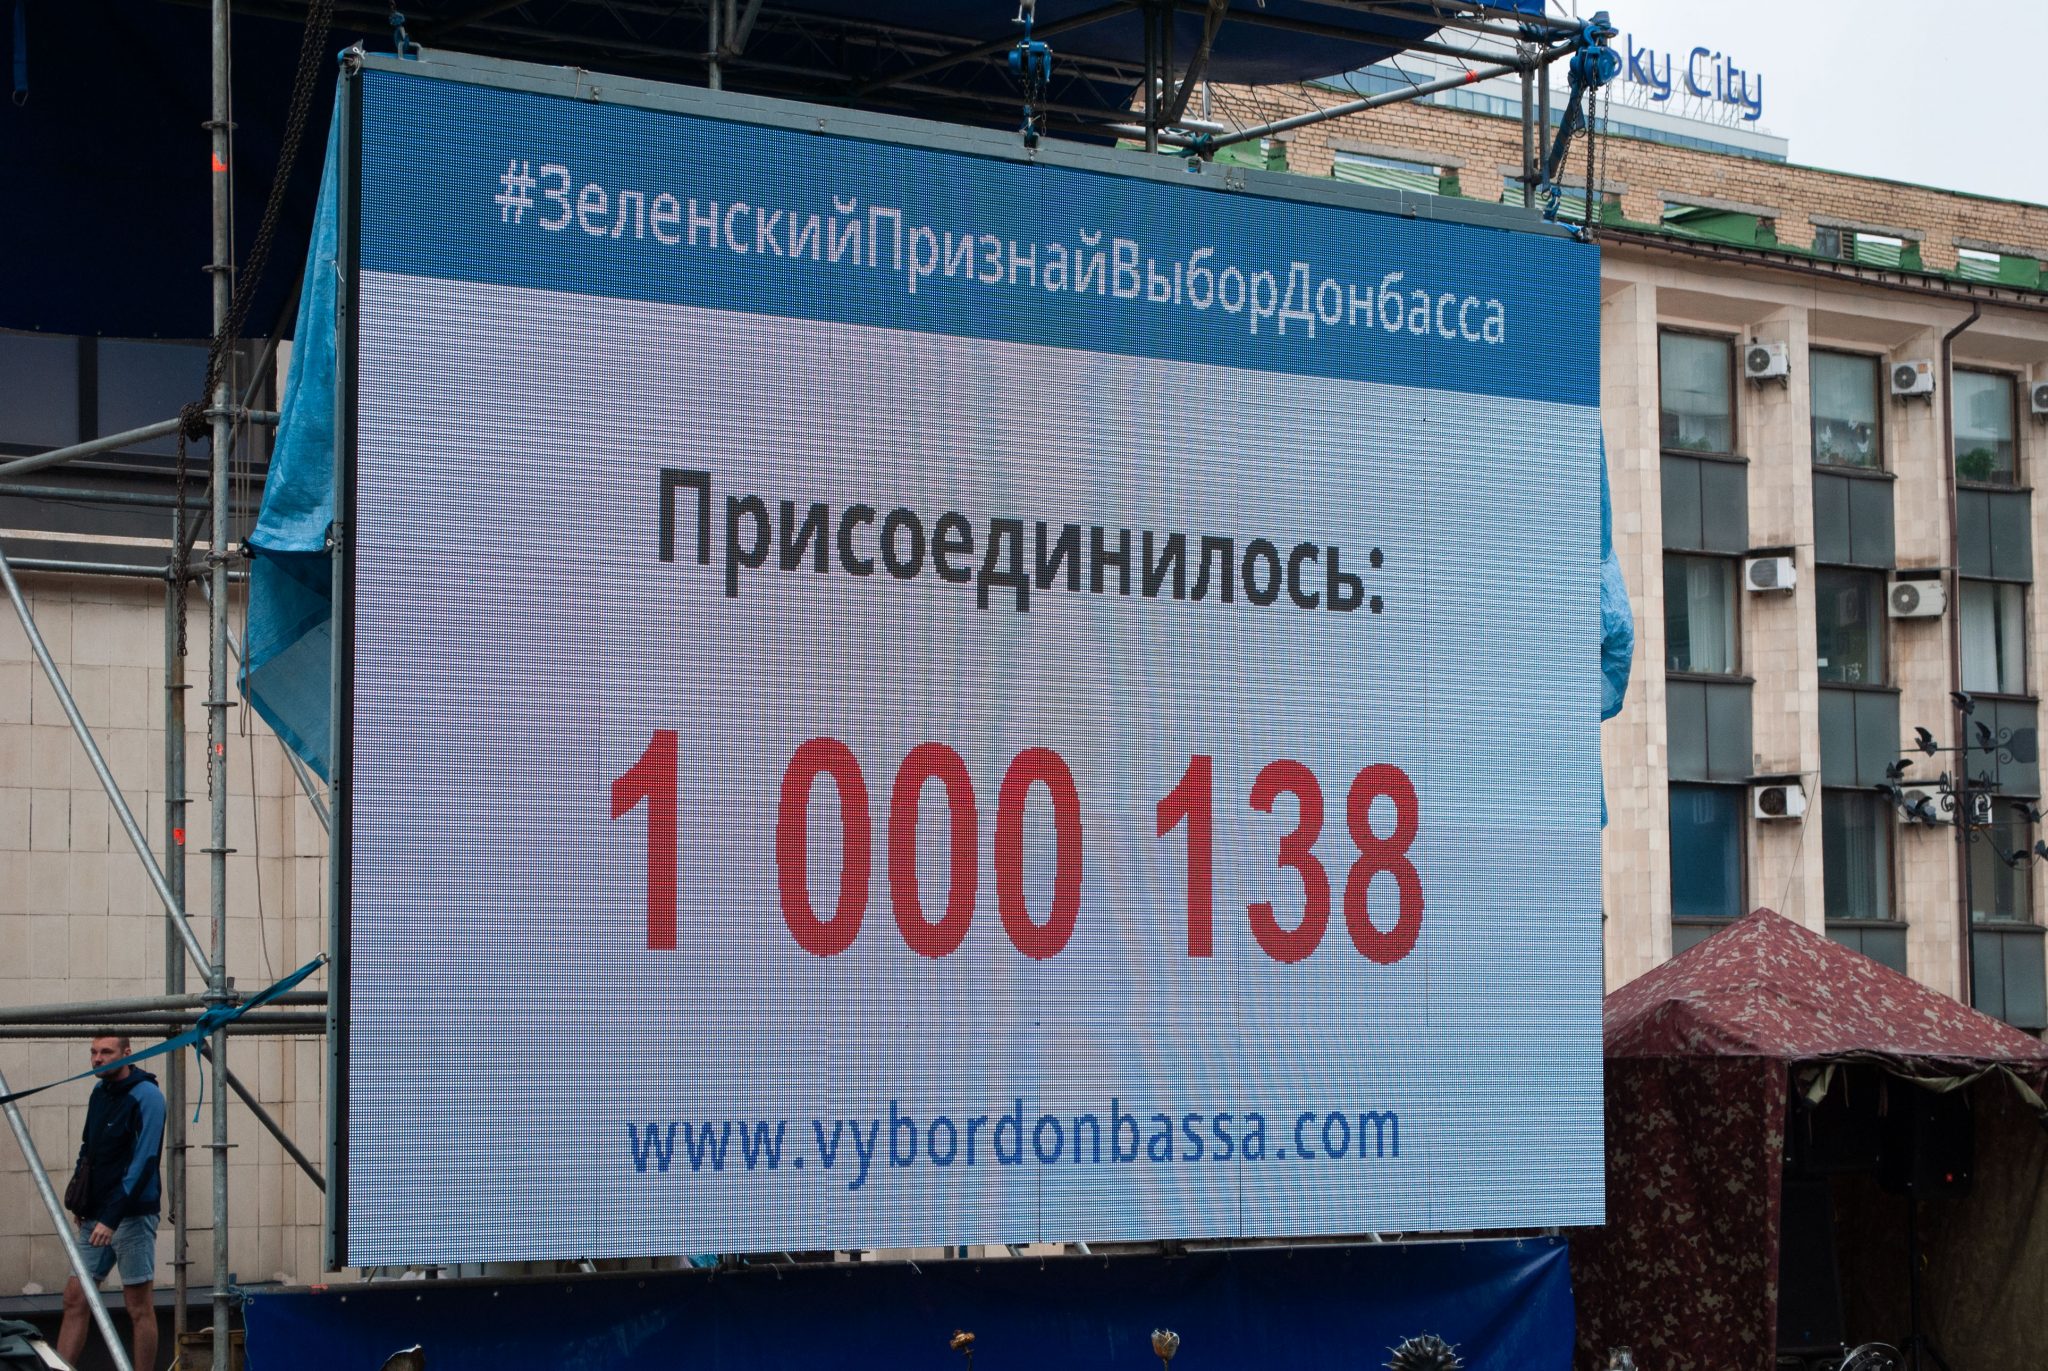 Количество присоединившихся к акции «Выбор Донбасса» превысило миллион человек